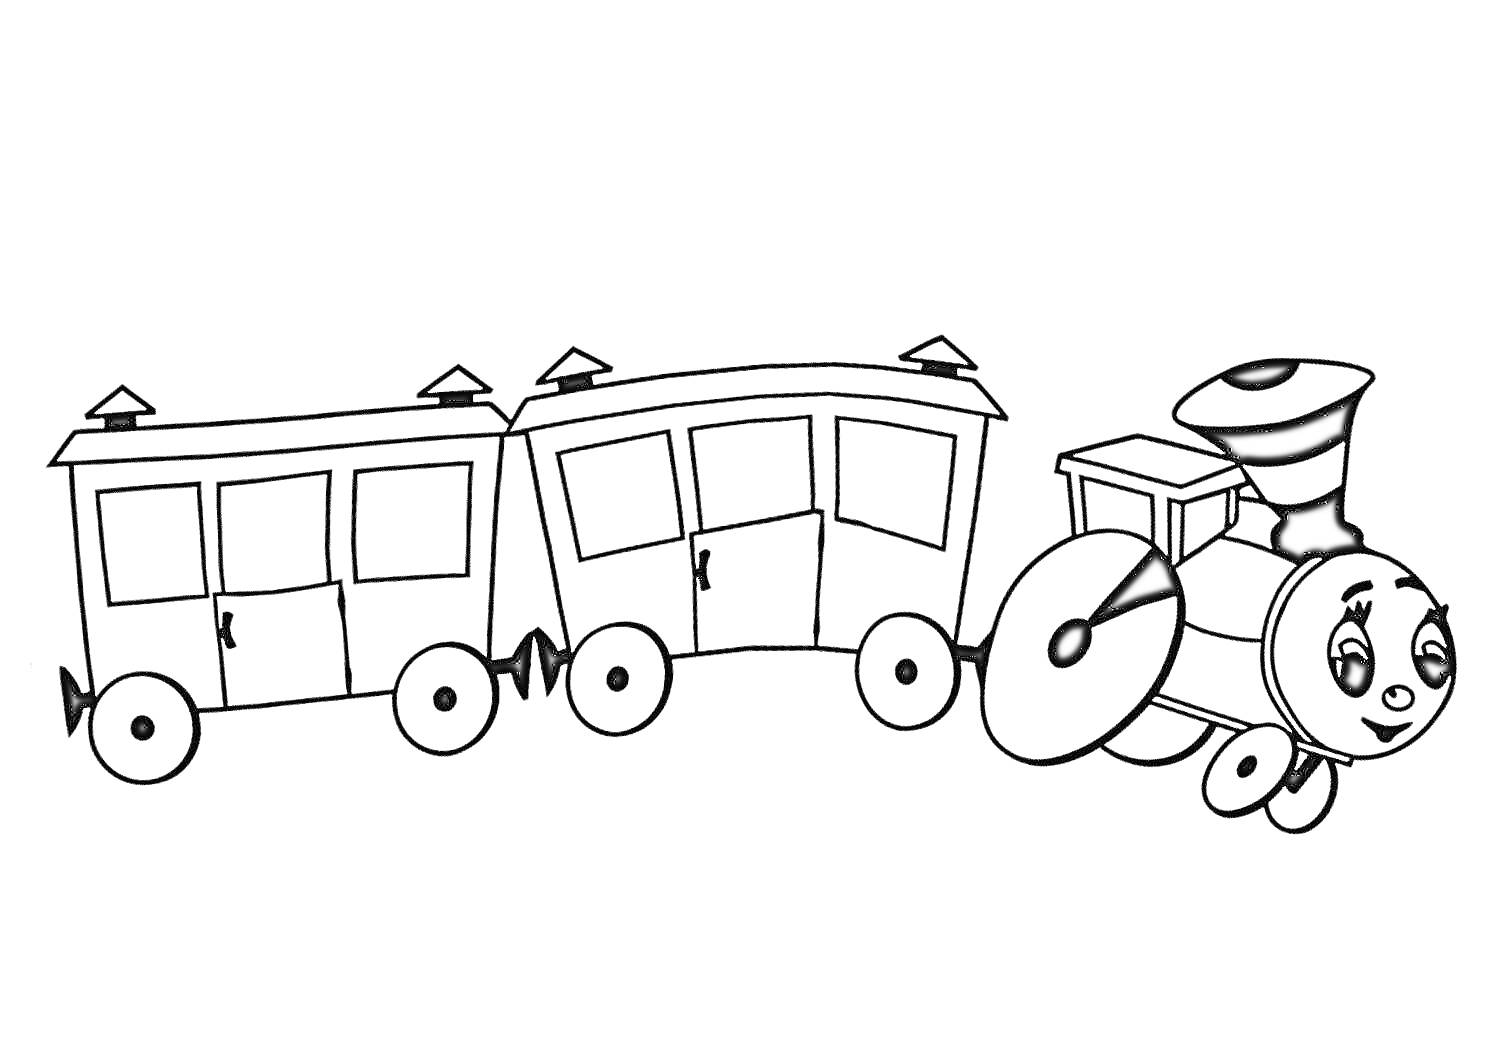 Раскраска Паровозик с двумя вагончиками, лицом на паровозике, колесами и крышами с флажками